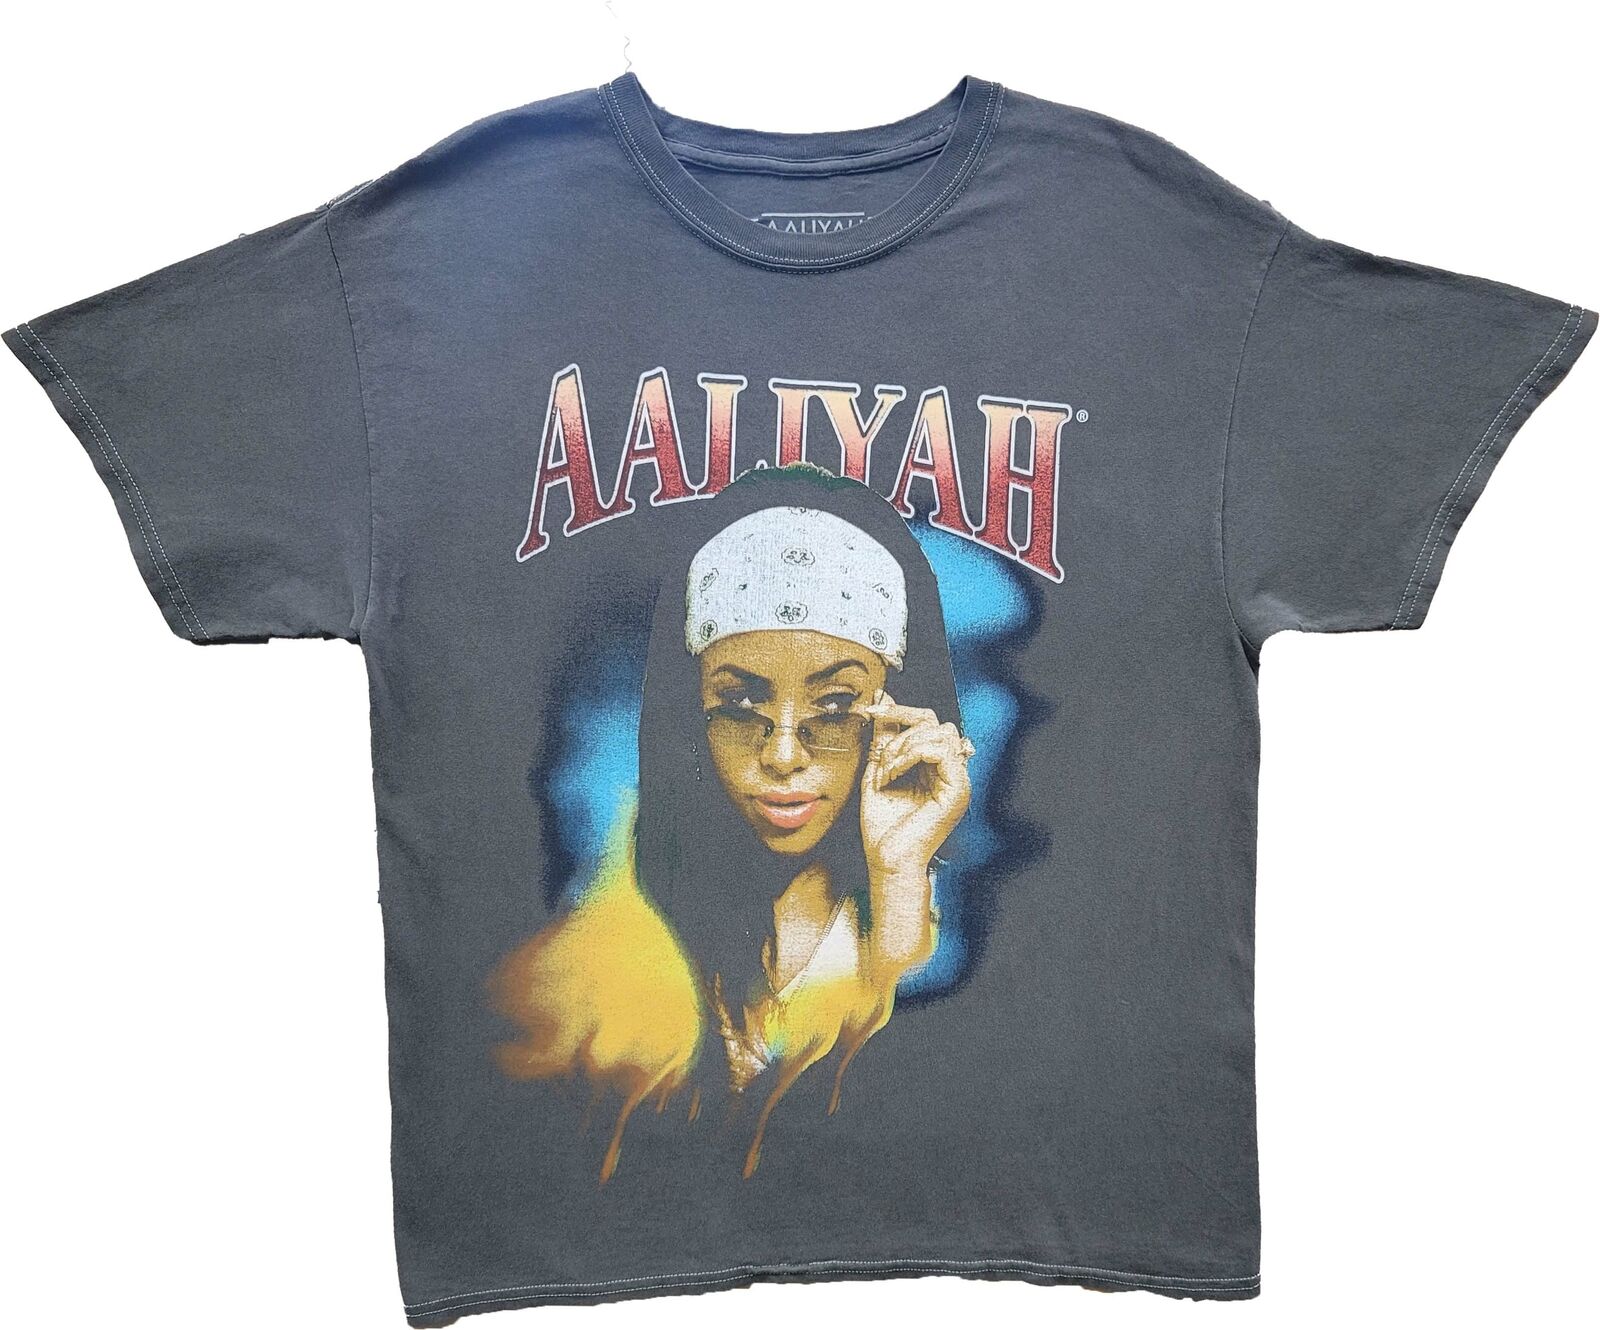 sagsøger dråbe Diskriminering af køn New Men's Aaliyah Vintage Graphic R&B Singer Classic T-Shirt Retro Tee Grey  | eBay